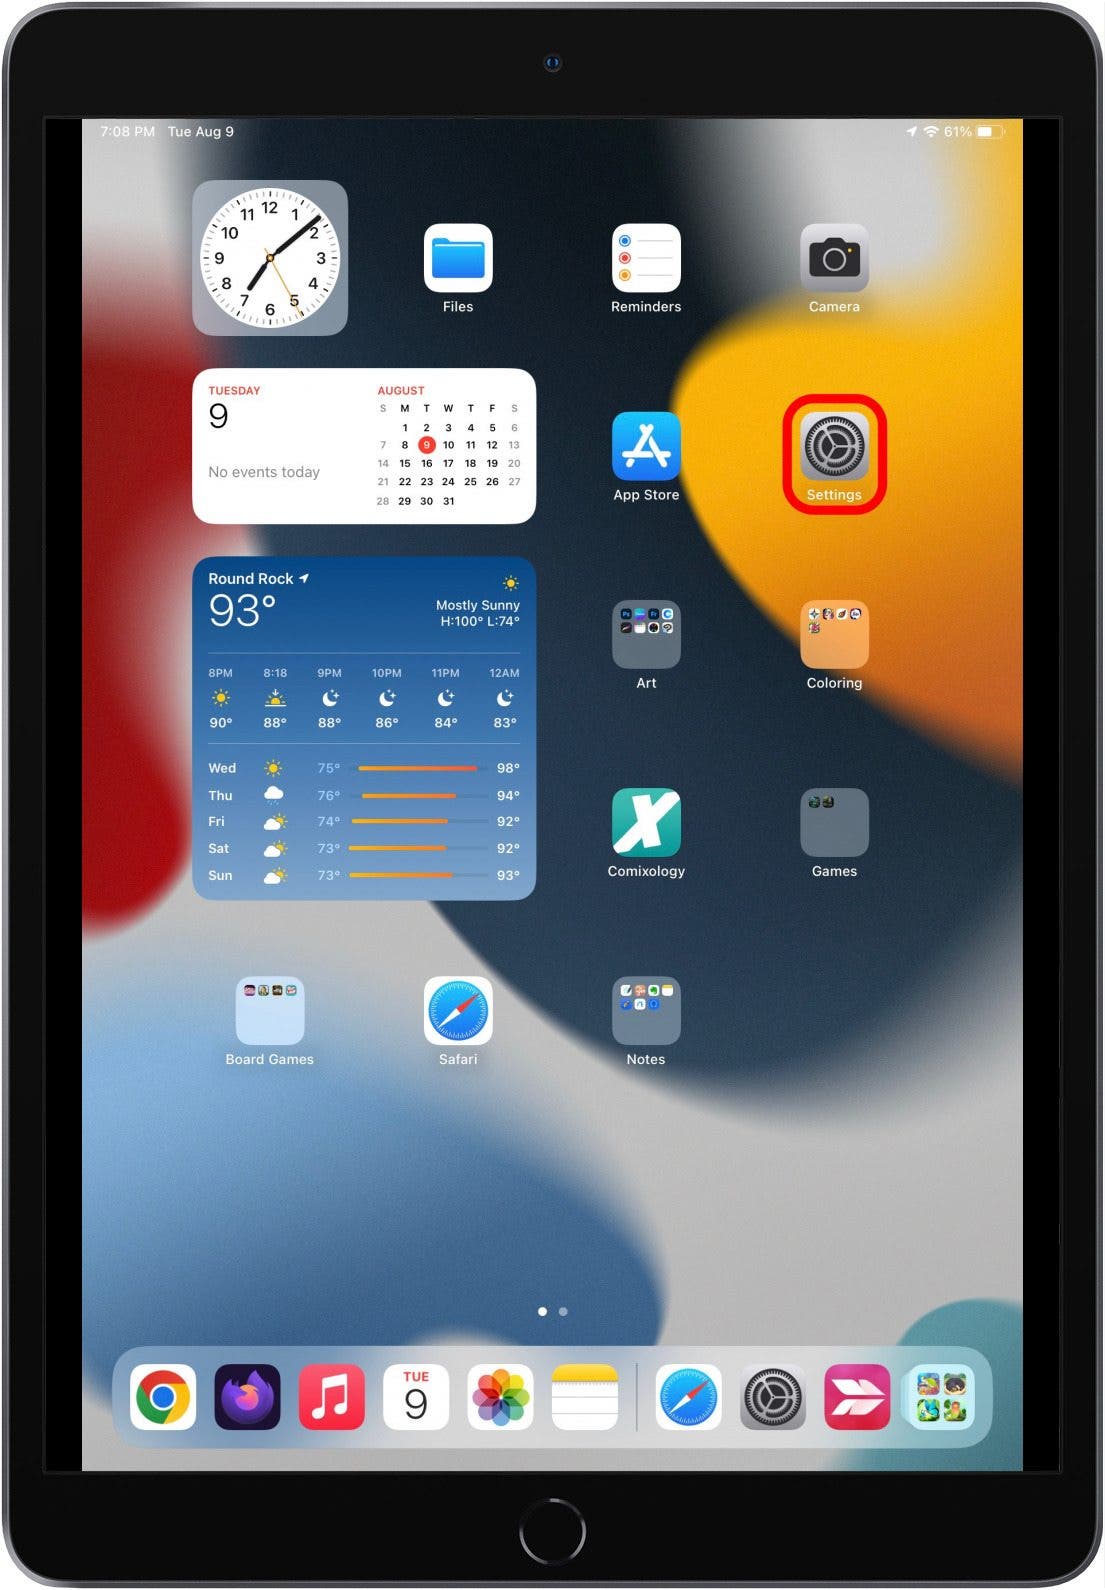 Pantalla de inicio del iPad con el ícono de la aplicación Configuración marcado.